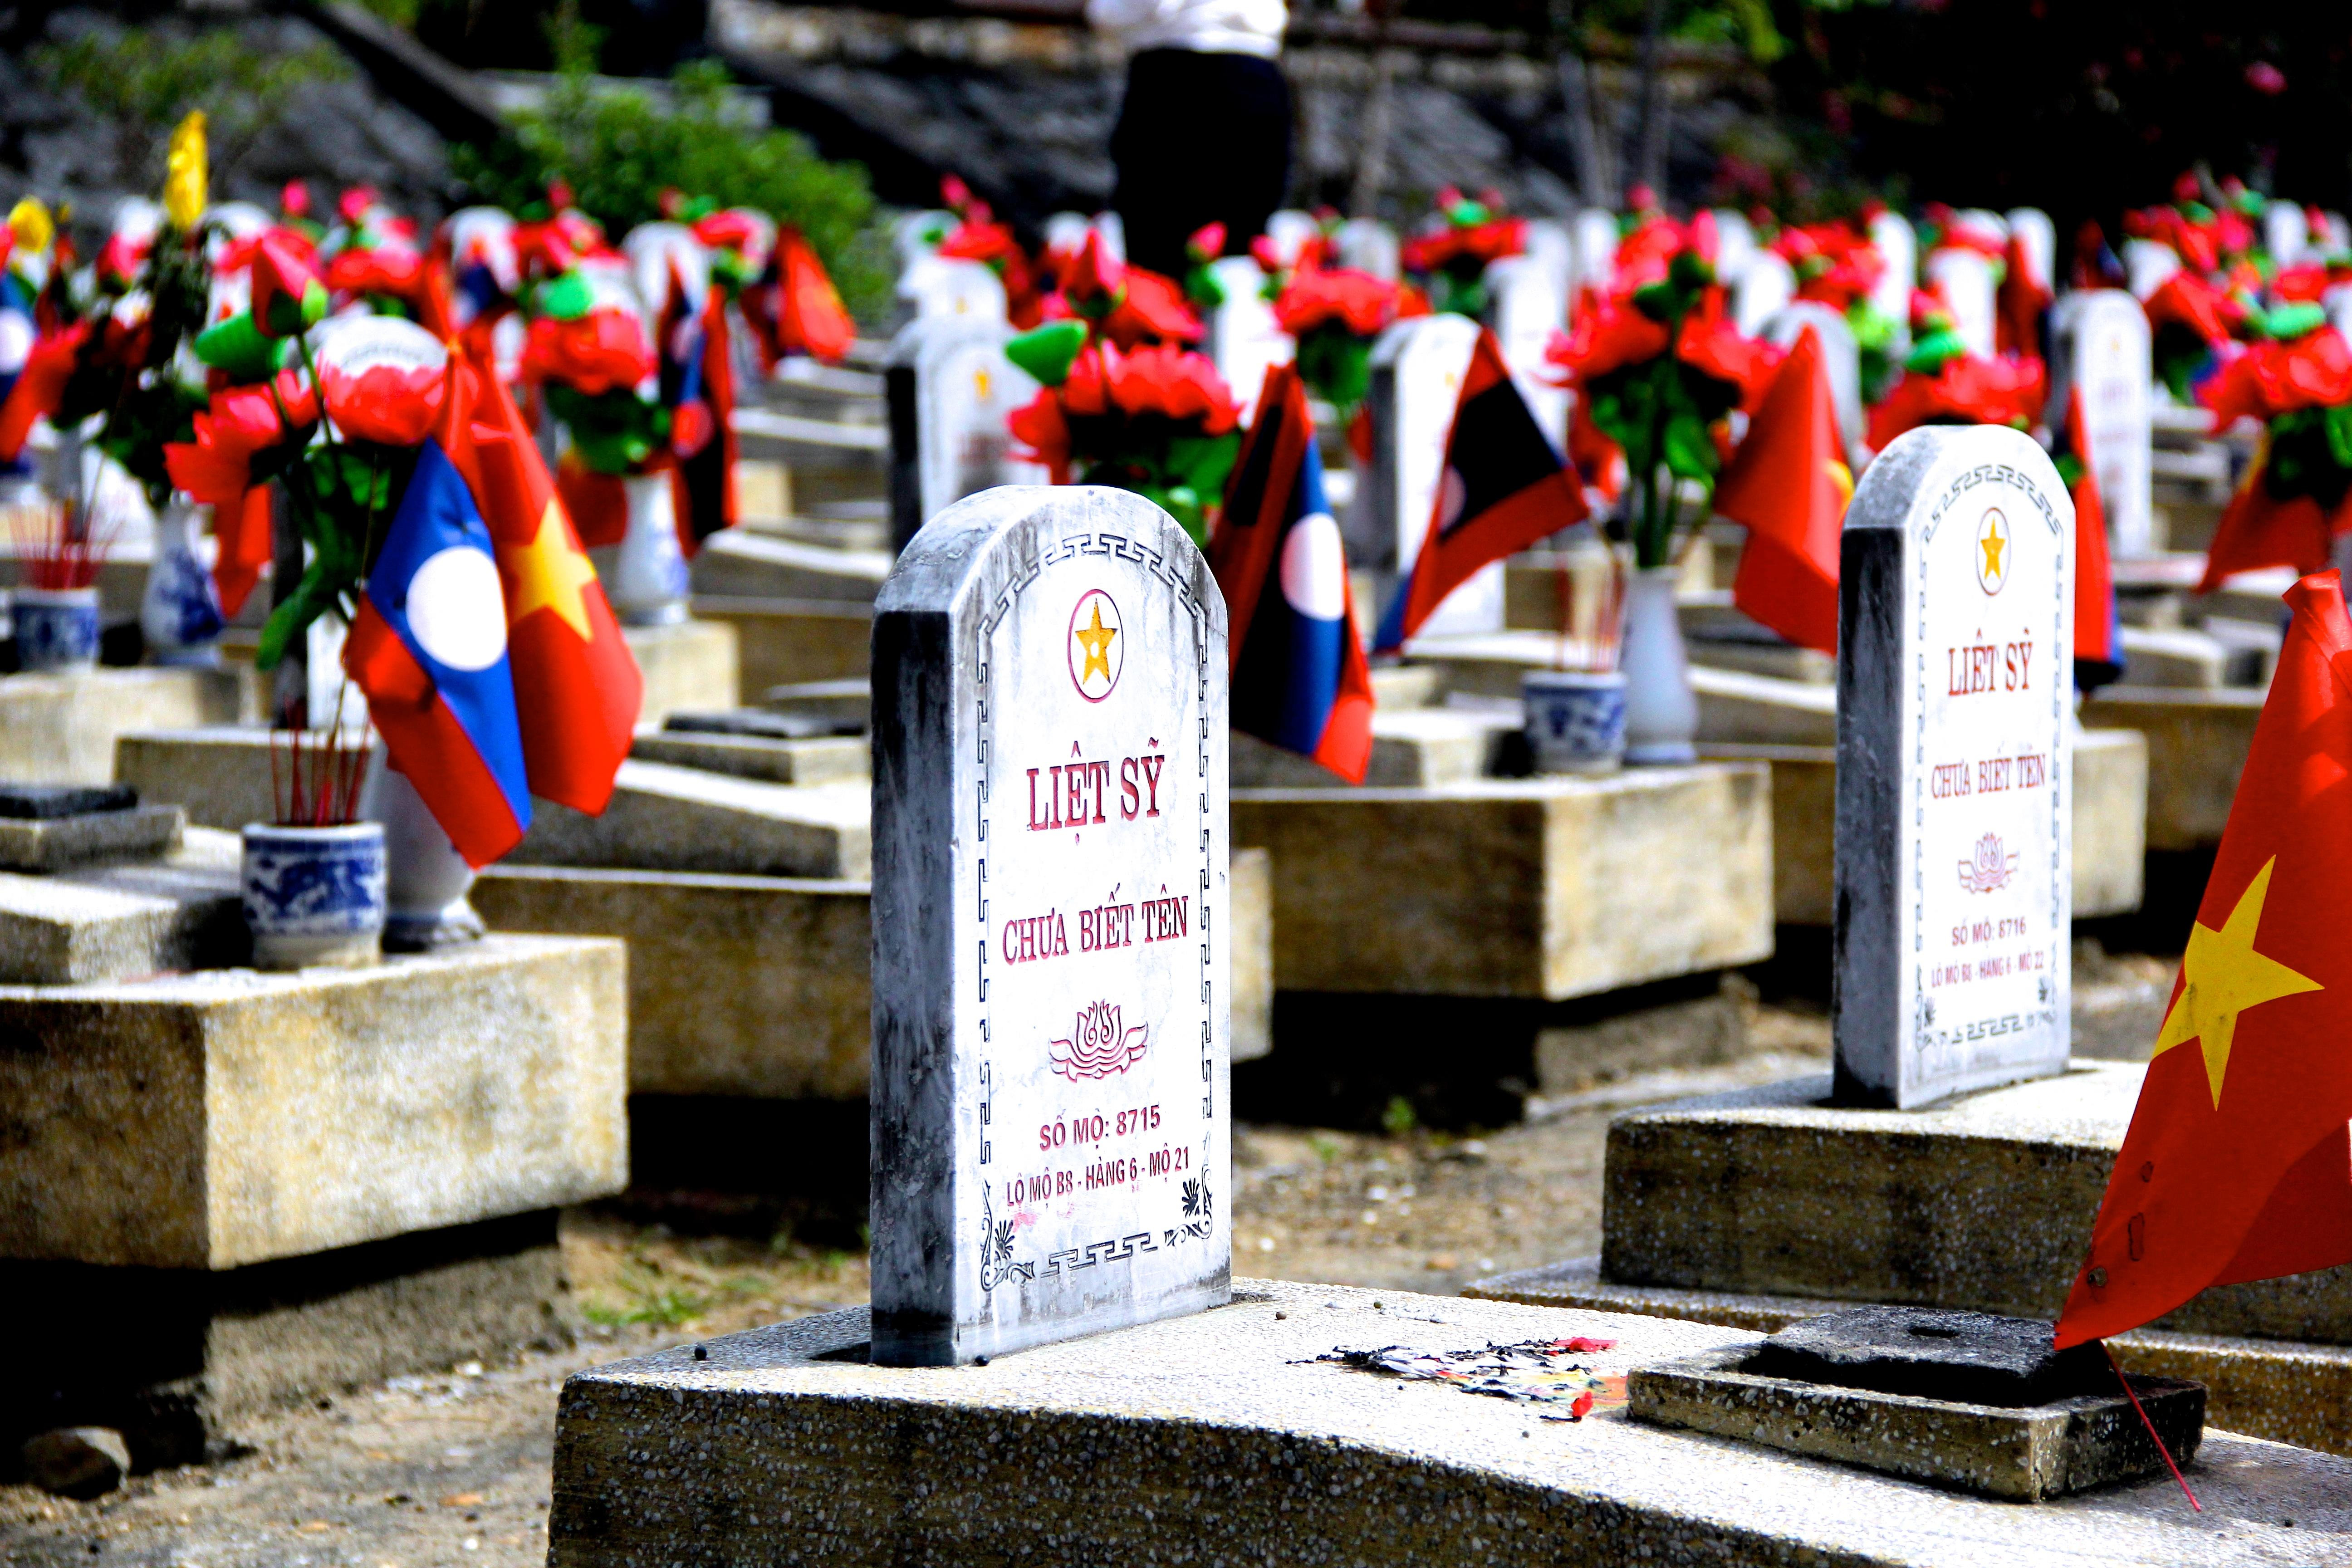 Nghĩa trang liệt sỹ quốc tế Việt - Lào nằm ở trung tâm huyện Anh Sơn, quy tập hơn 11 nghìn phần mộ hài cốt của liệt sỹ, quân tình nguyện Việt Nam và các chuyên gia hy sinh trong chiến trường ở nước bạn Lào. Trong số đó, có khoảng 3.500 phần mộ có tên tuổi, quê quán, số còn lại người thì chưa biết tên, địa chỉ.